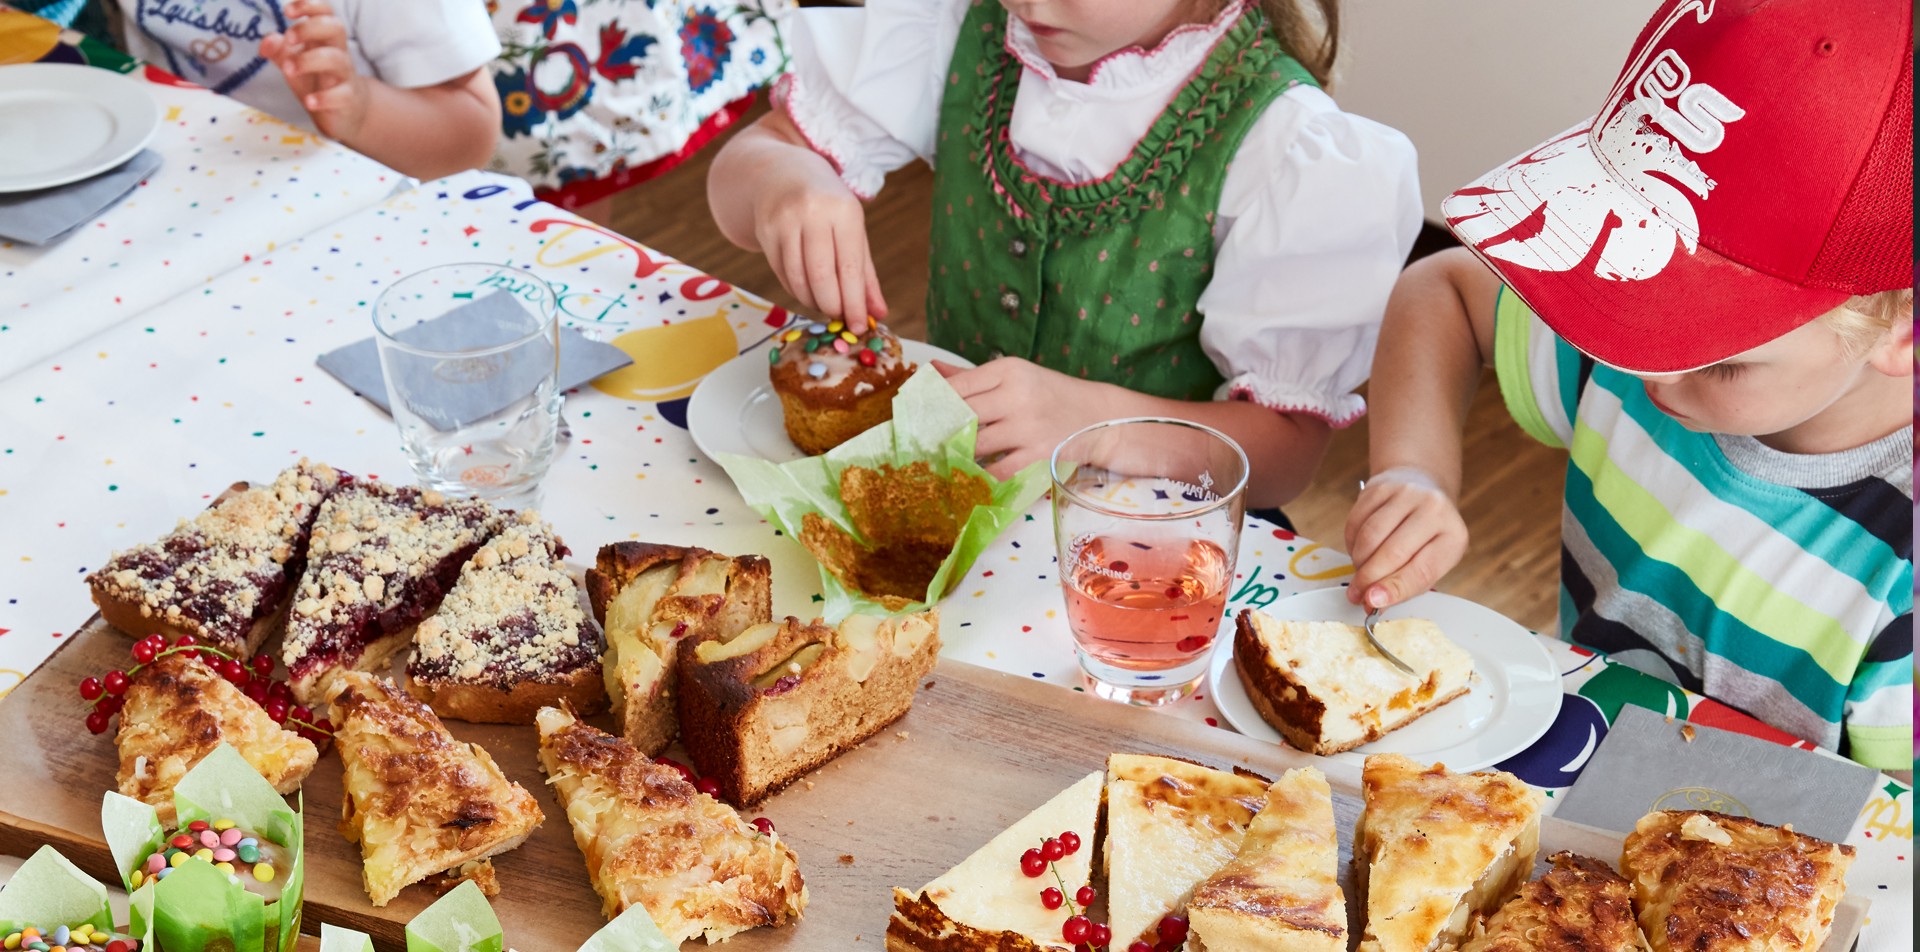 Kinder essen Geburtstagskuchen an einem dekorierten Geburtstagstisch